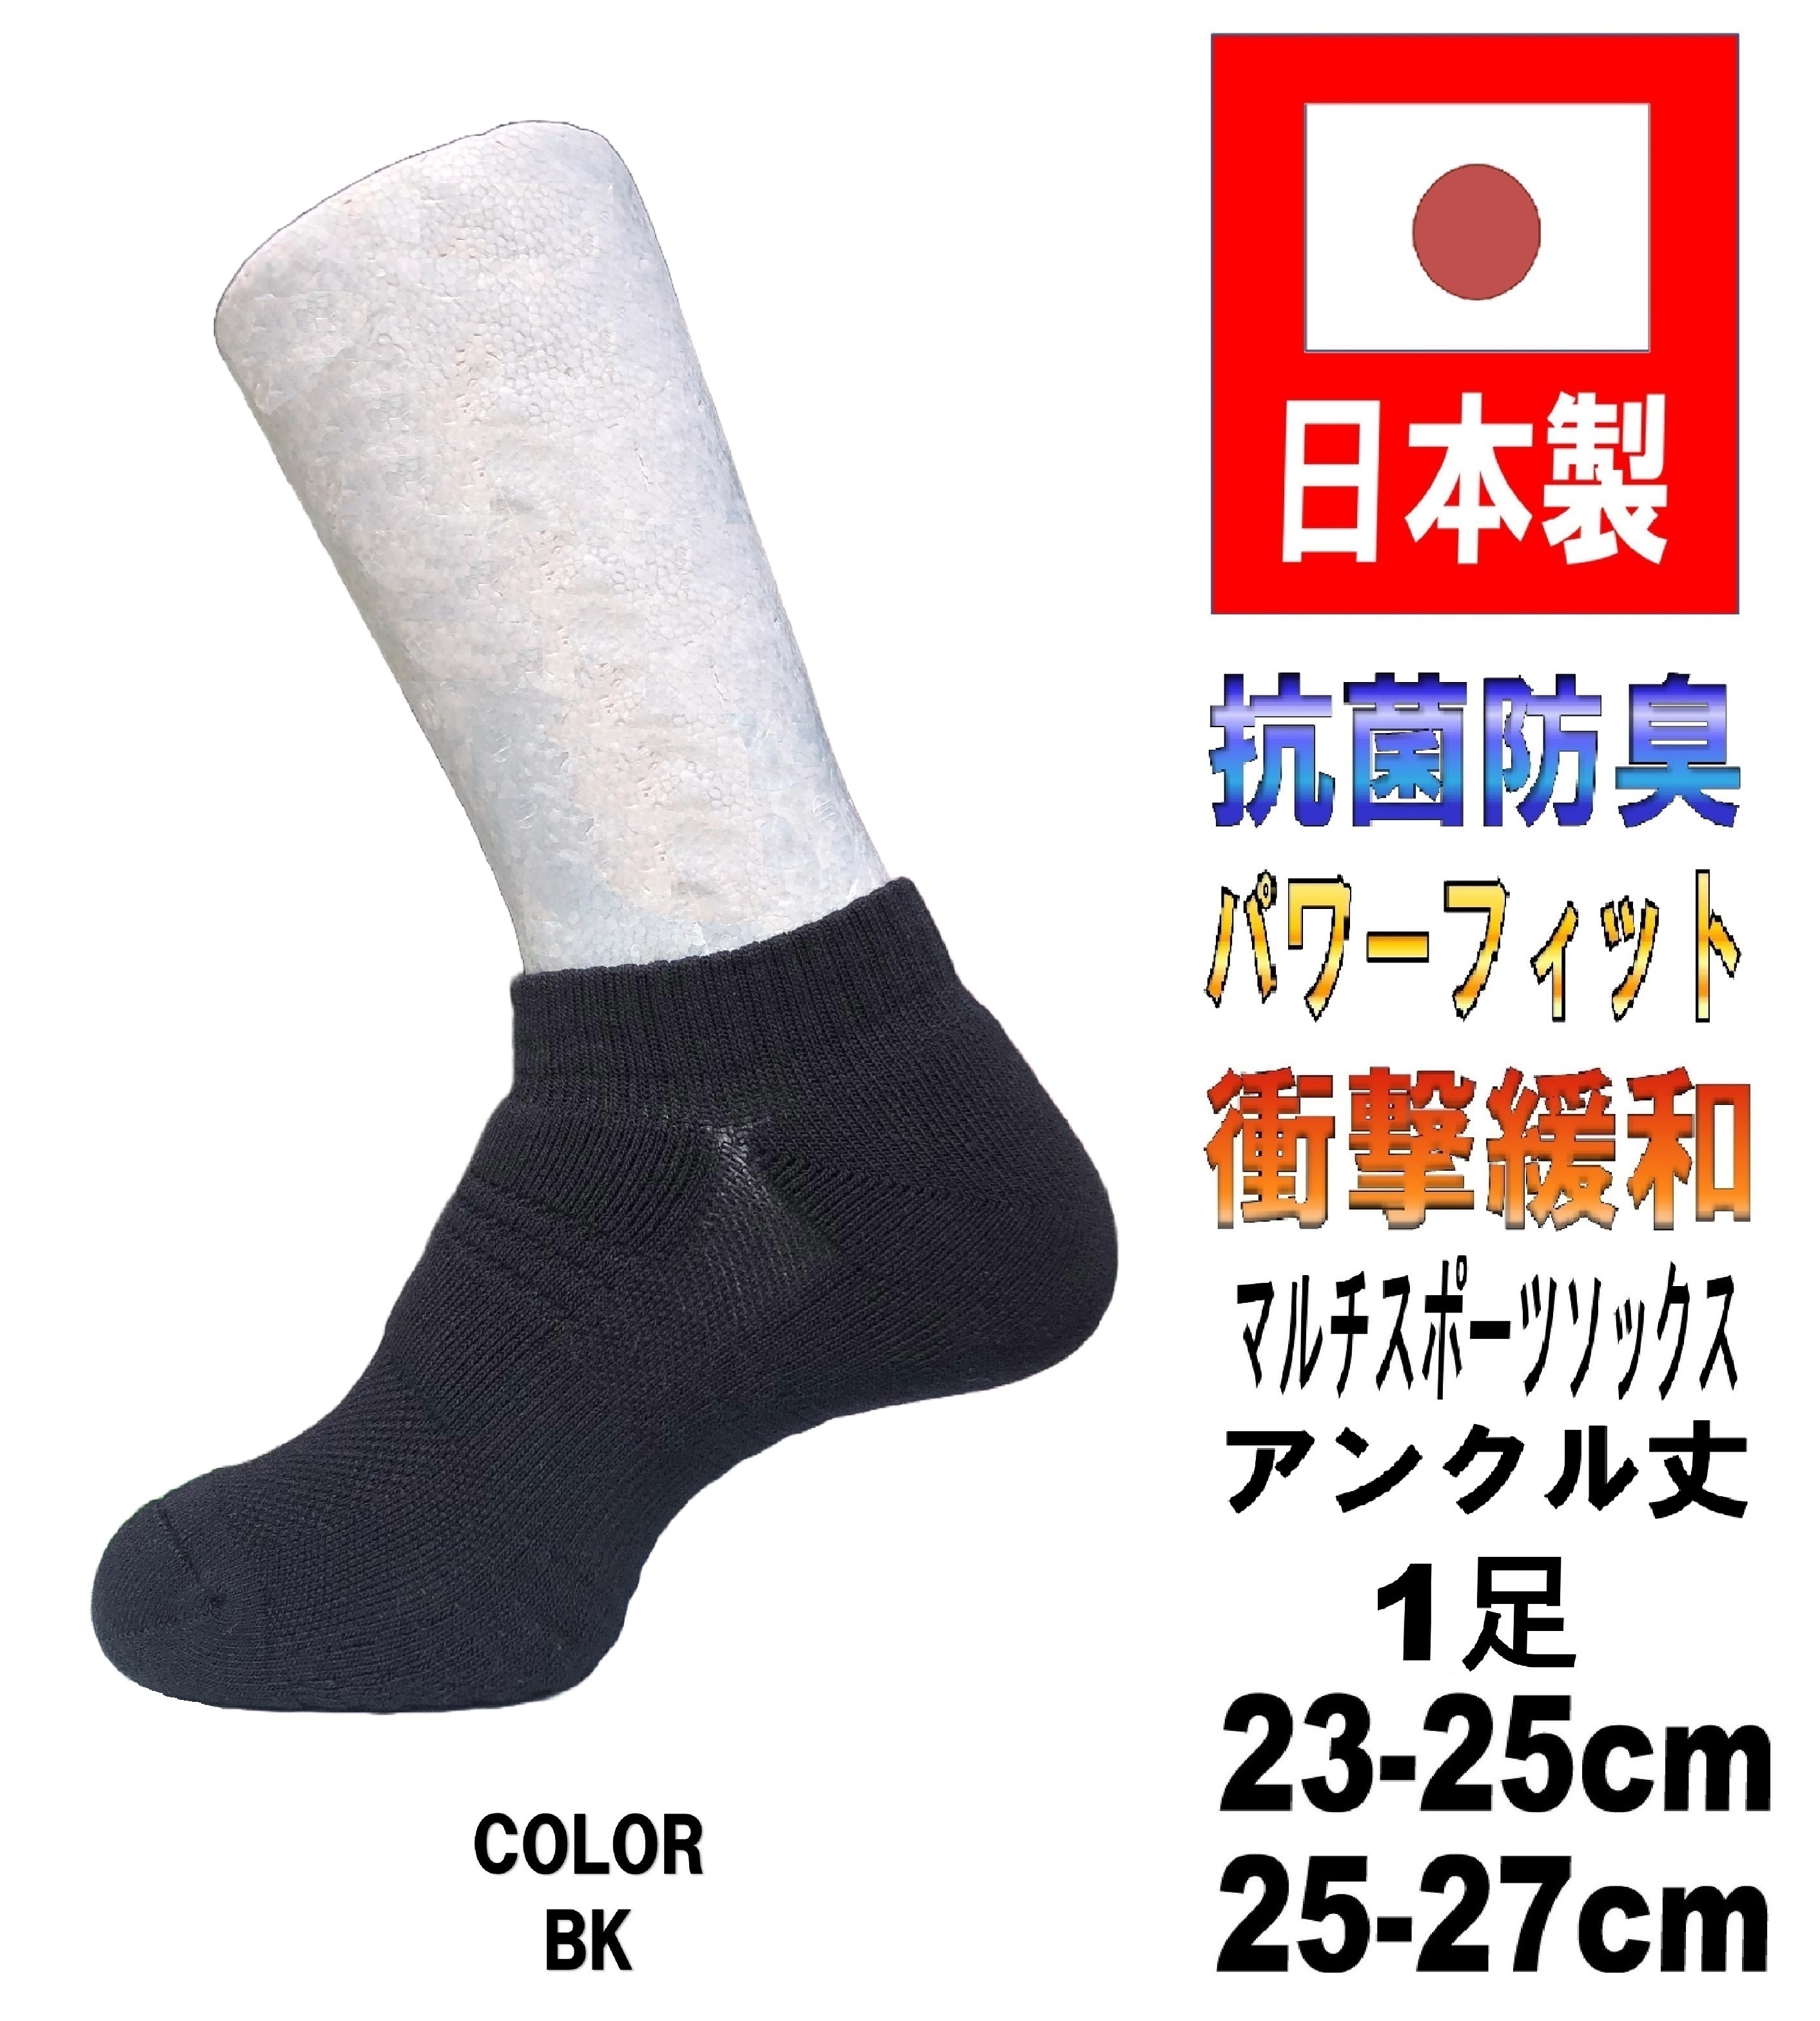 日本製 マルチスポーツ アンクルソックス バスケットボール 1足 2サイズ 2カラー